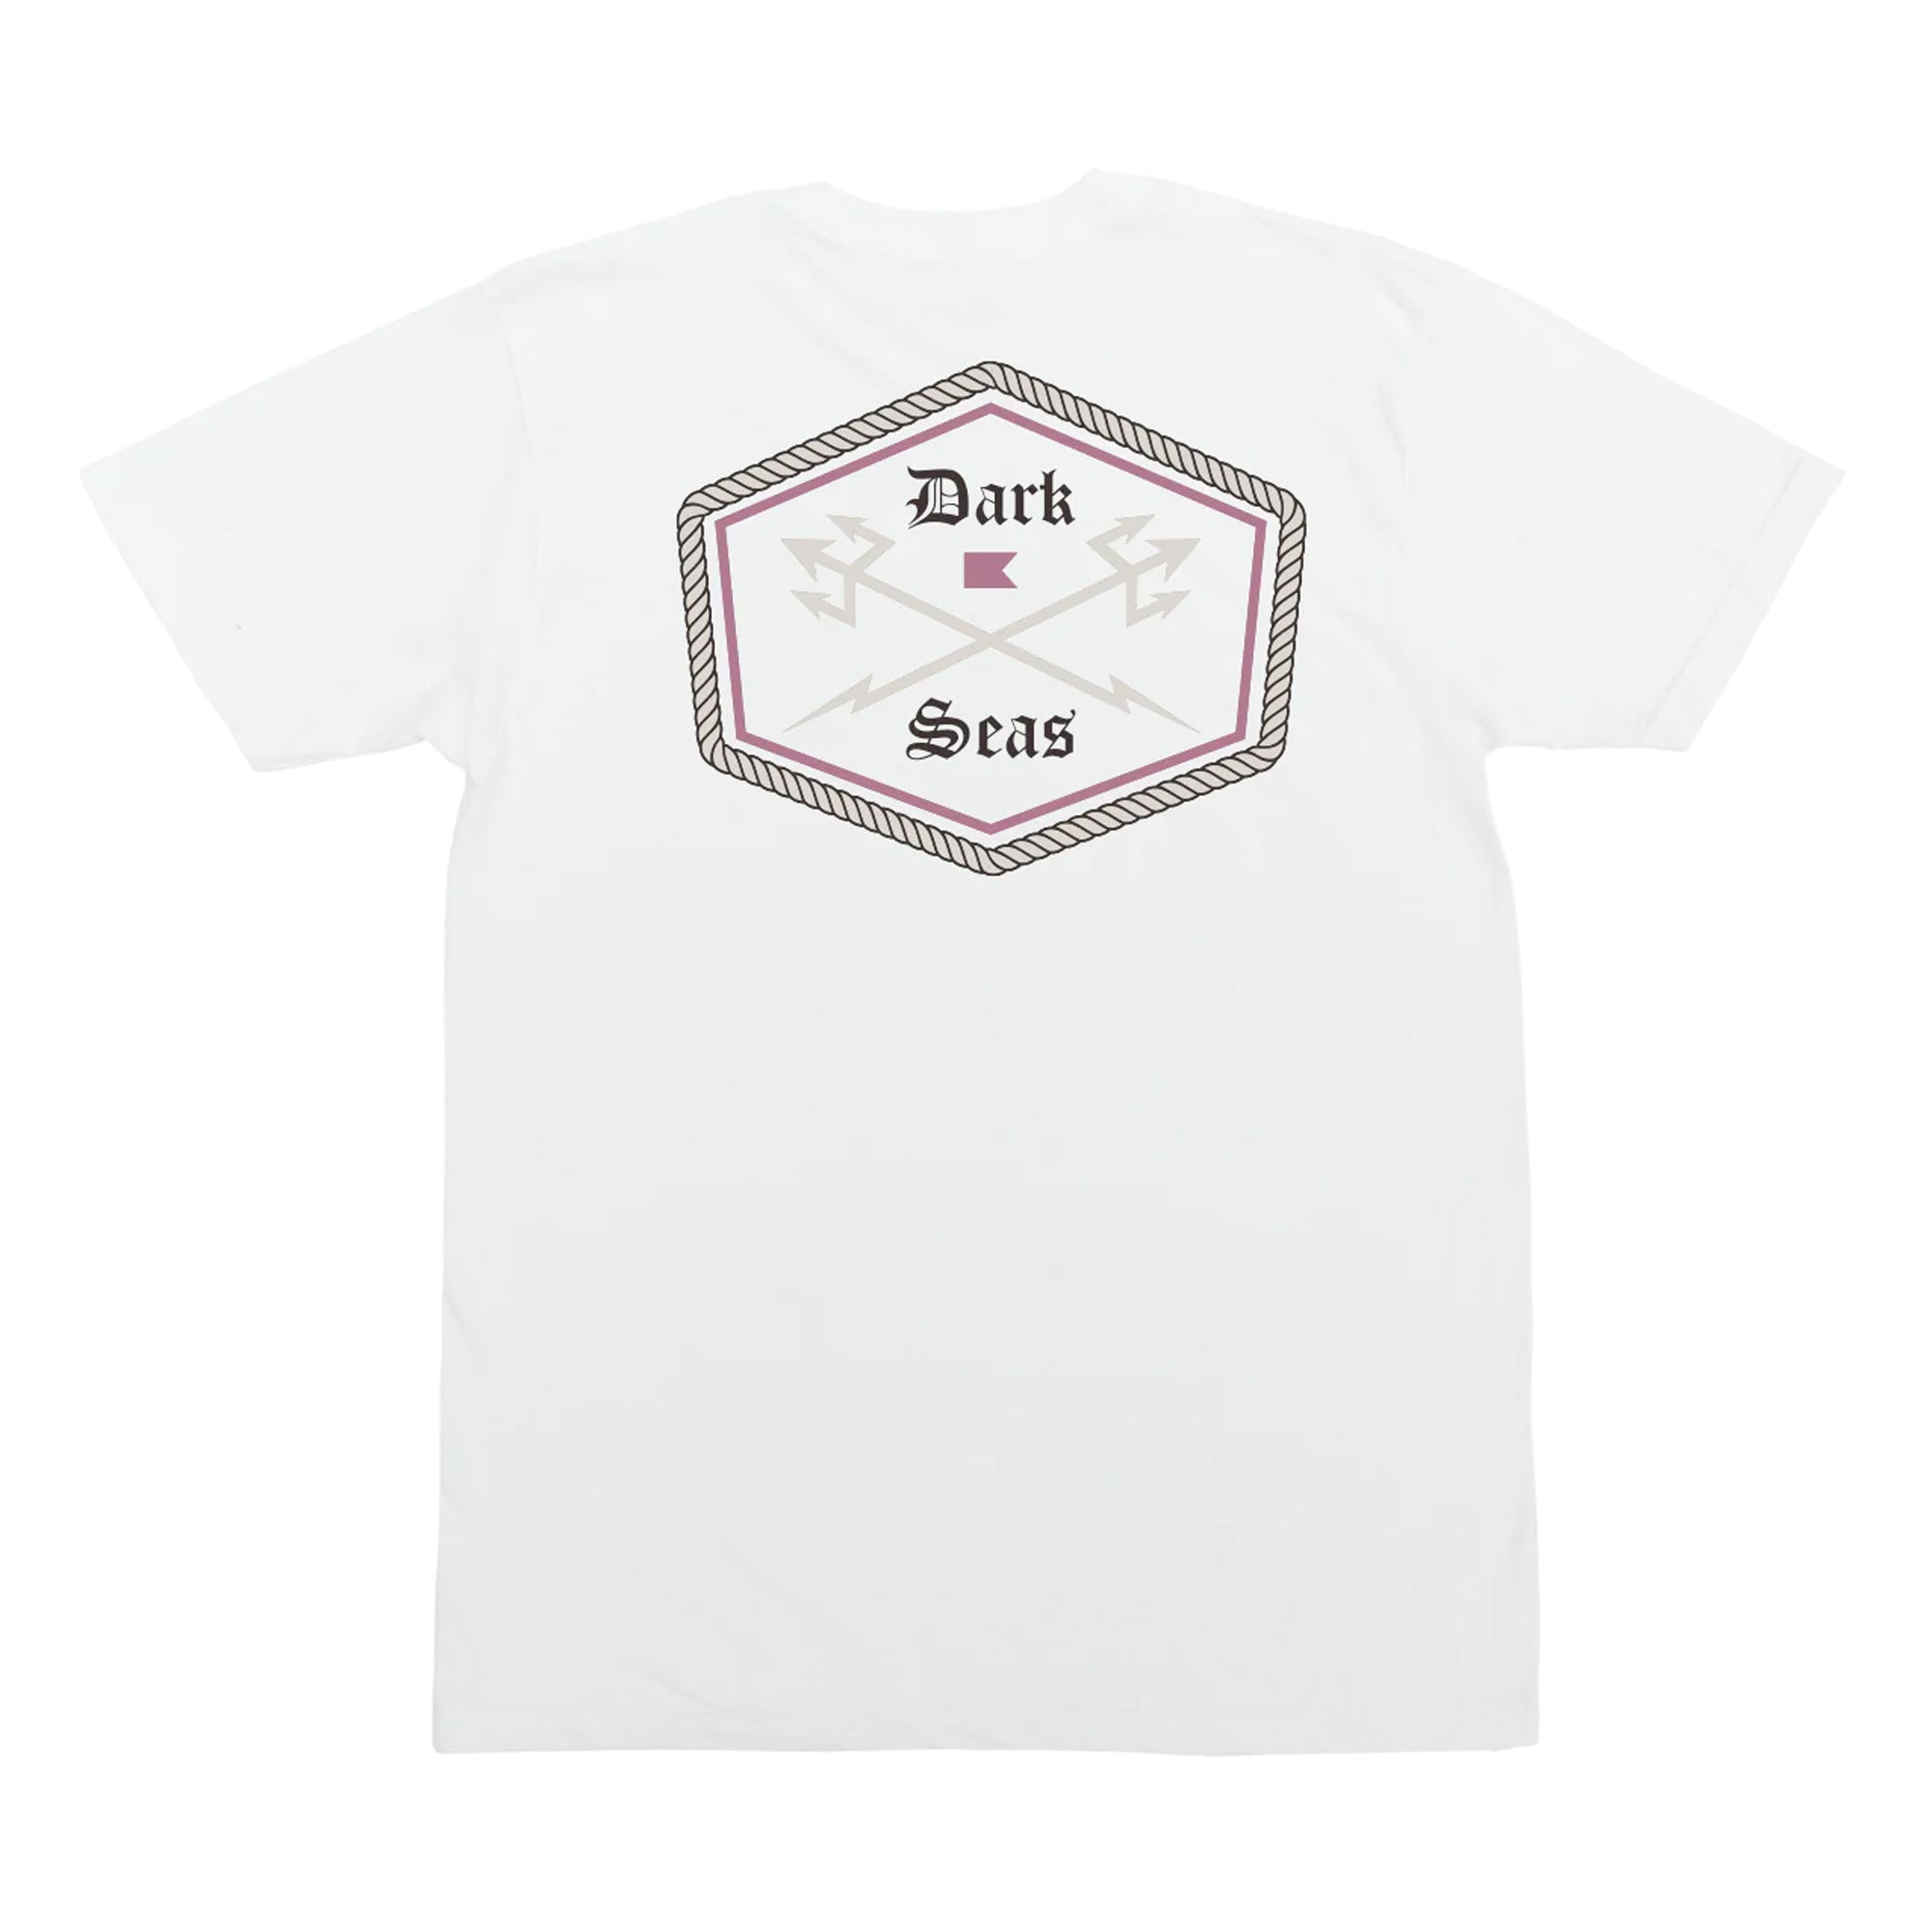 Dark Seas Cornerstone Premium Men's S/S T-Shirt